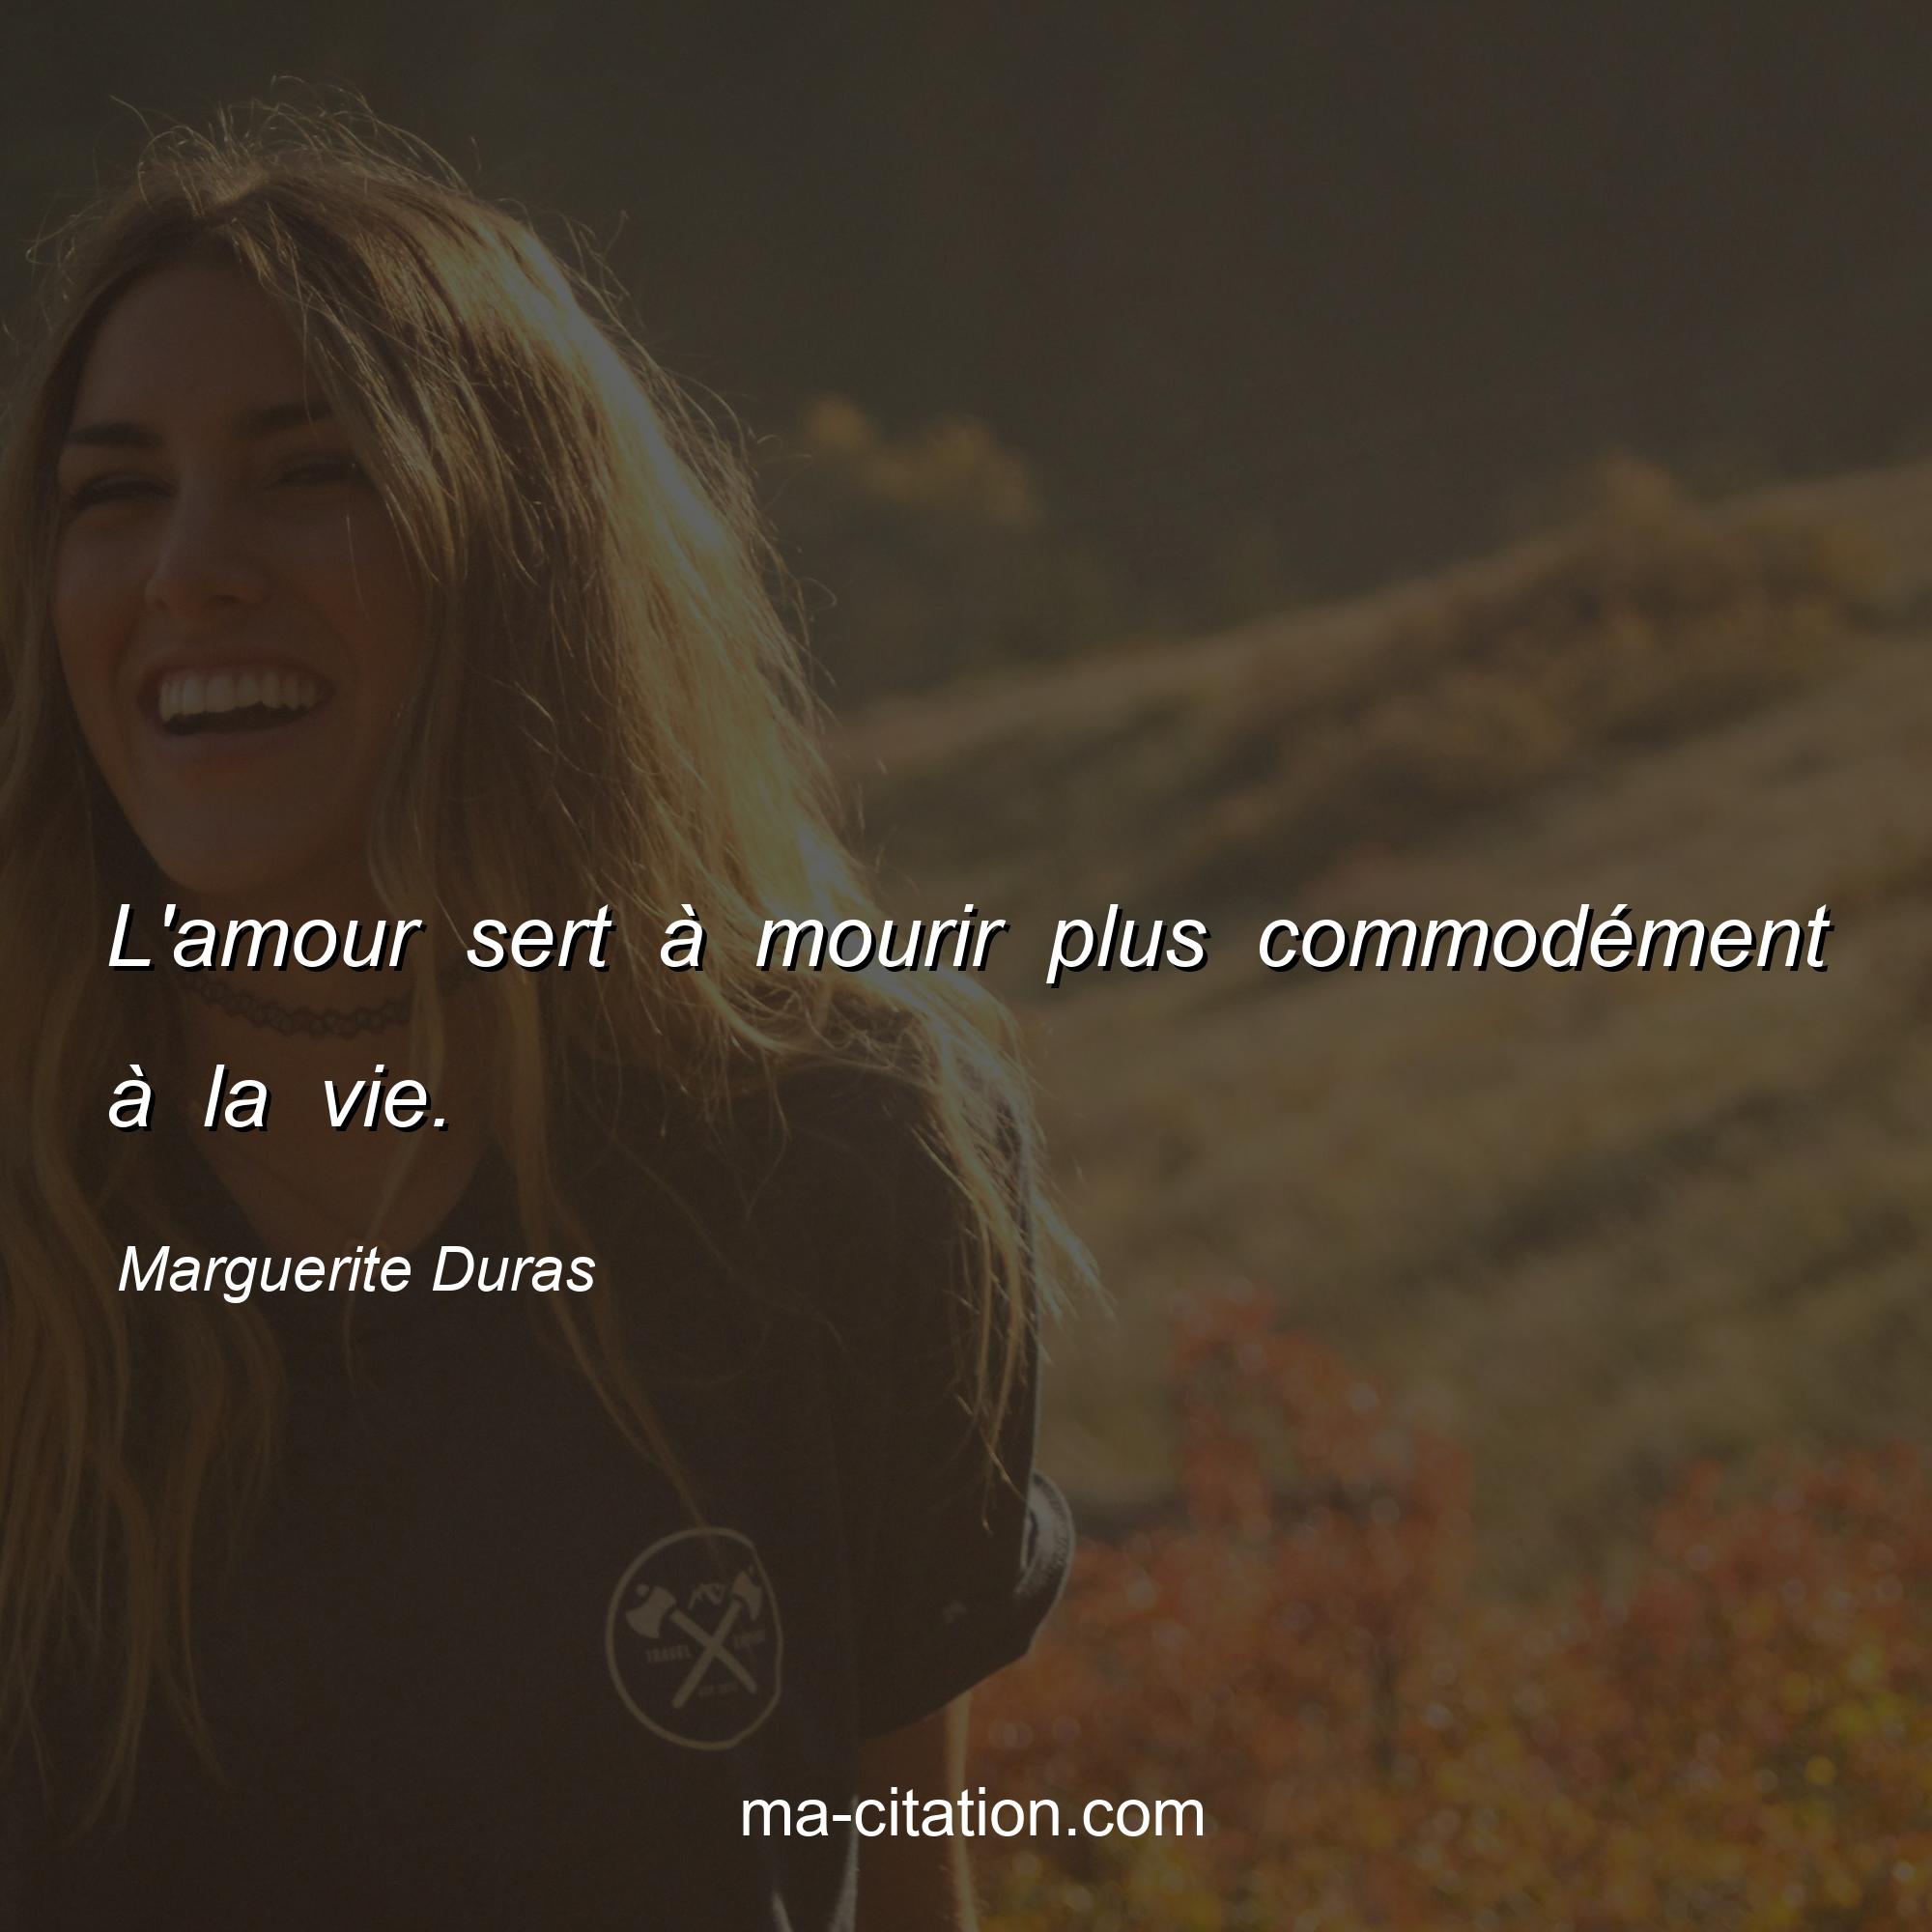 Marguerite Duras : L'amour sert à mourir plus commodément à la vie.